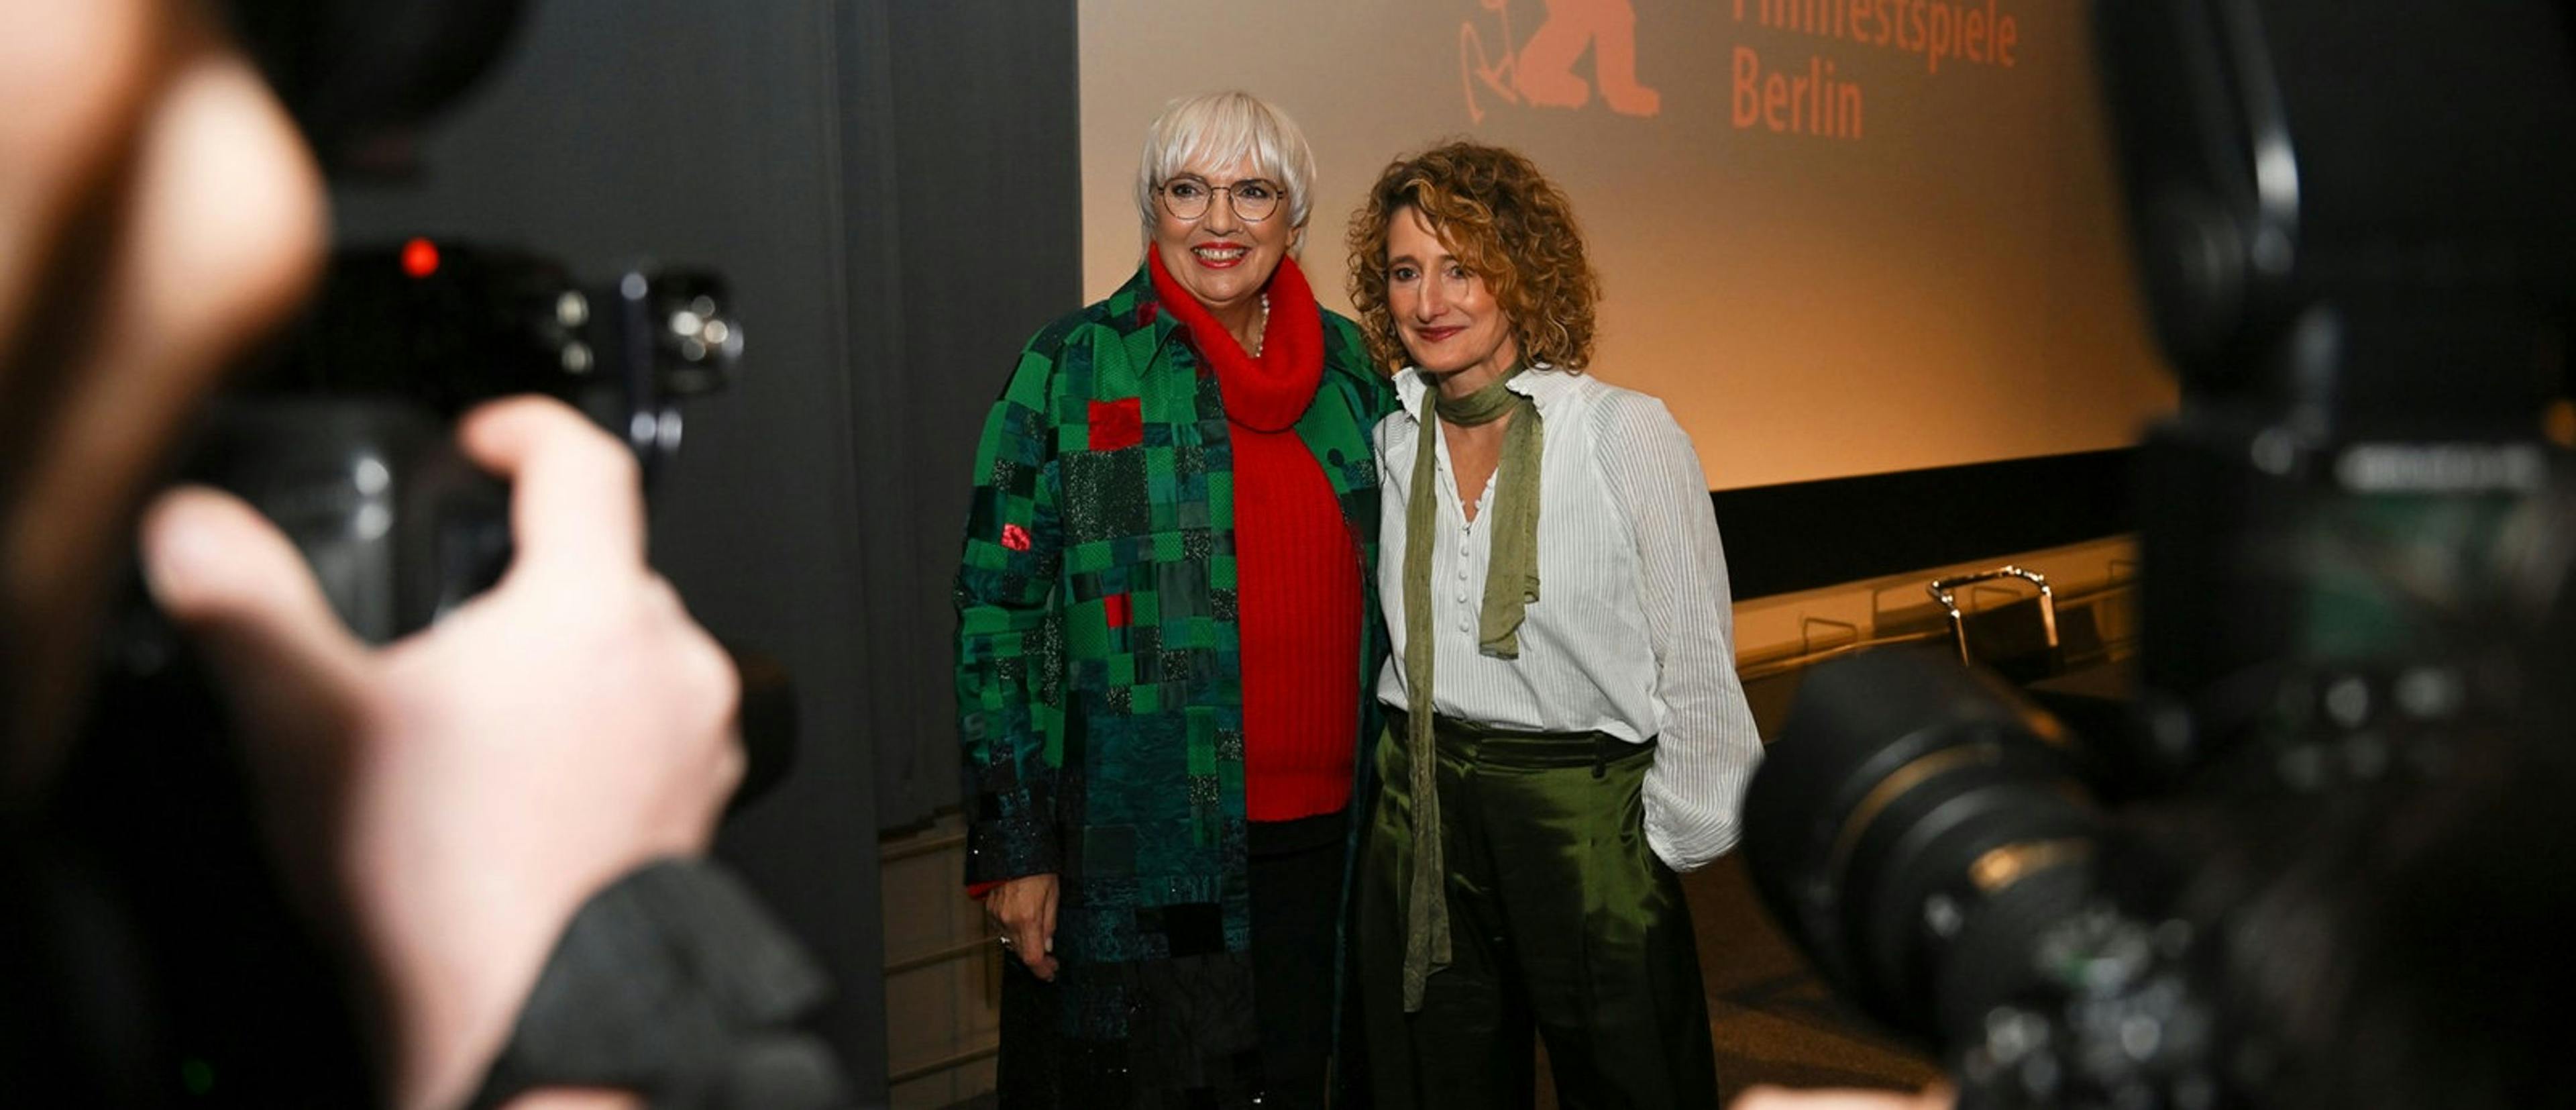 La nueva directora de la Berlinale, Tricia Tuttle, posa con la ministra de Cultura Claudia Roth tras su presentación